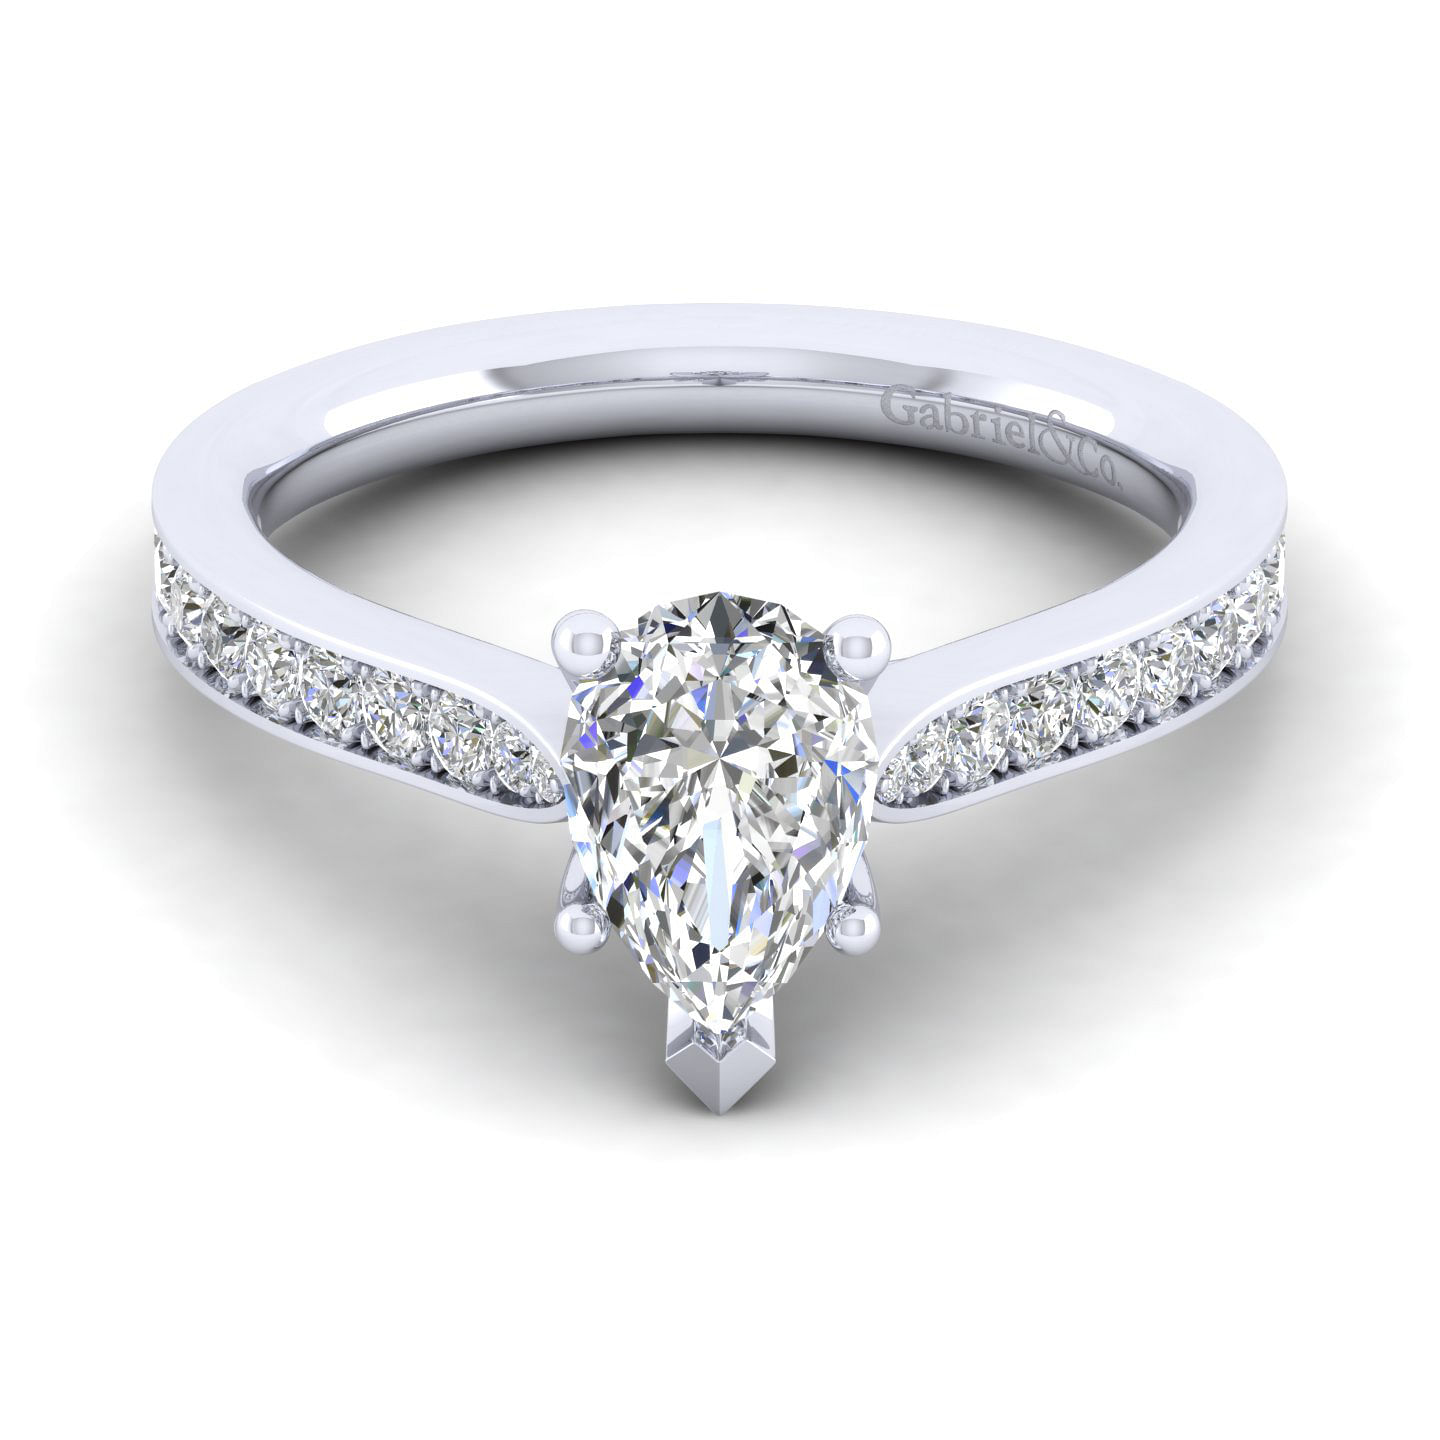 Merritt - 14K White Gold Pear Shape Diamond Engagement Ring